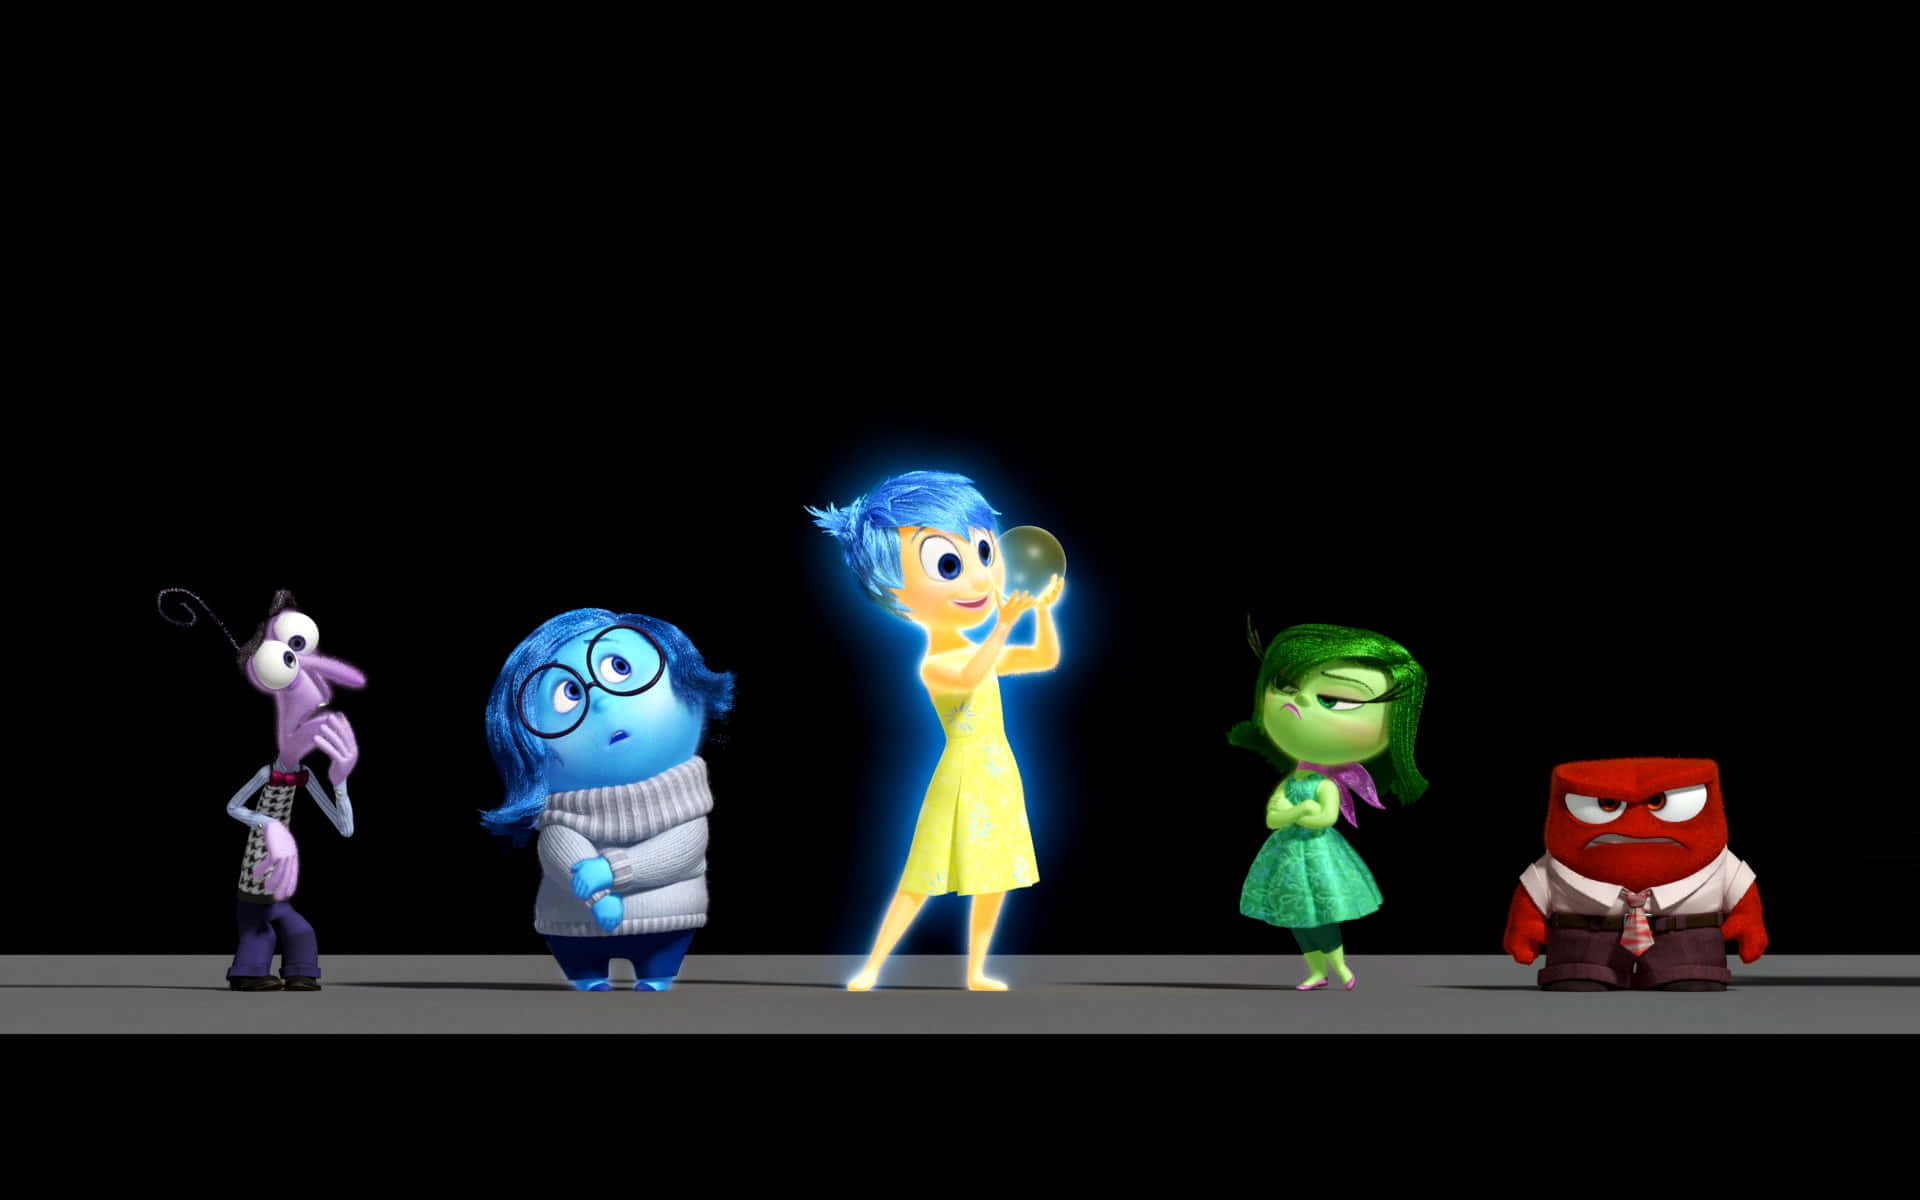 Unternimmein Abenteuer Mit Pixars Beliebten Charakteren!